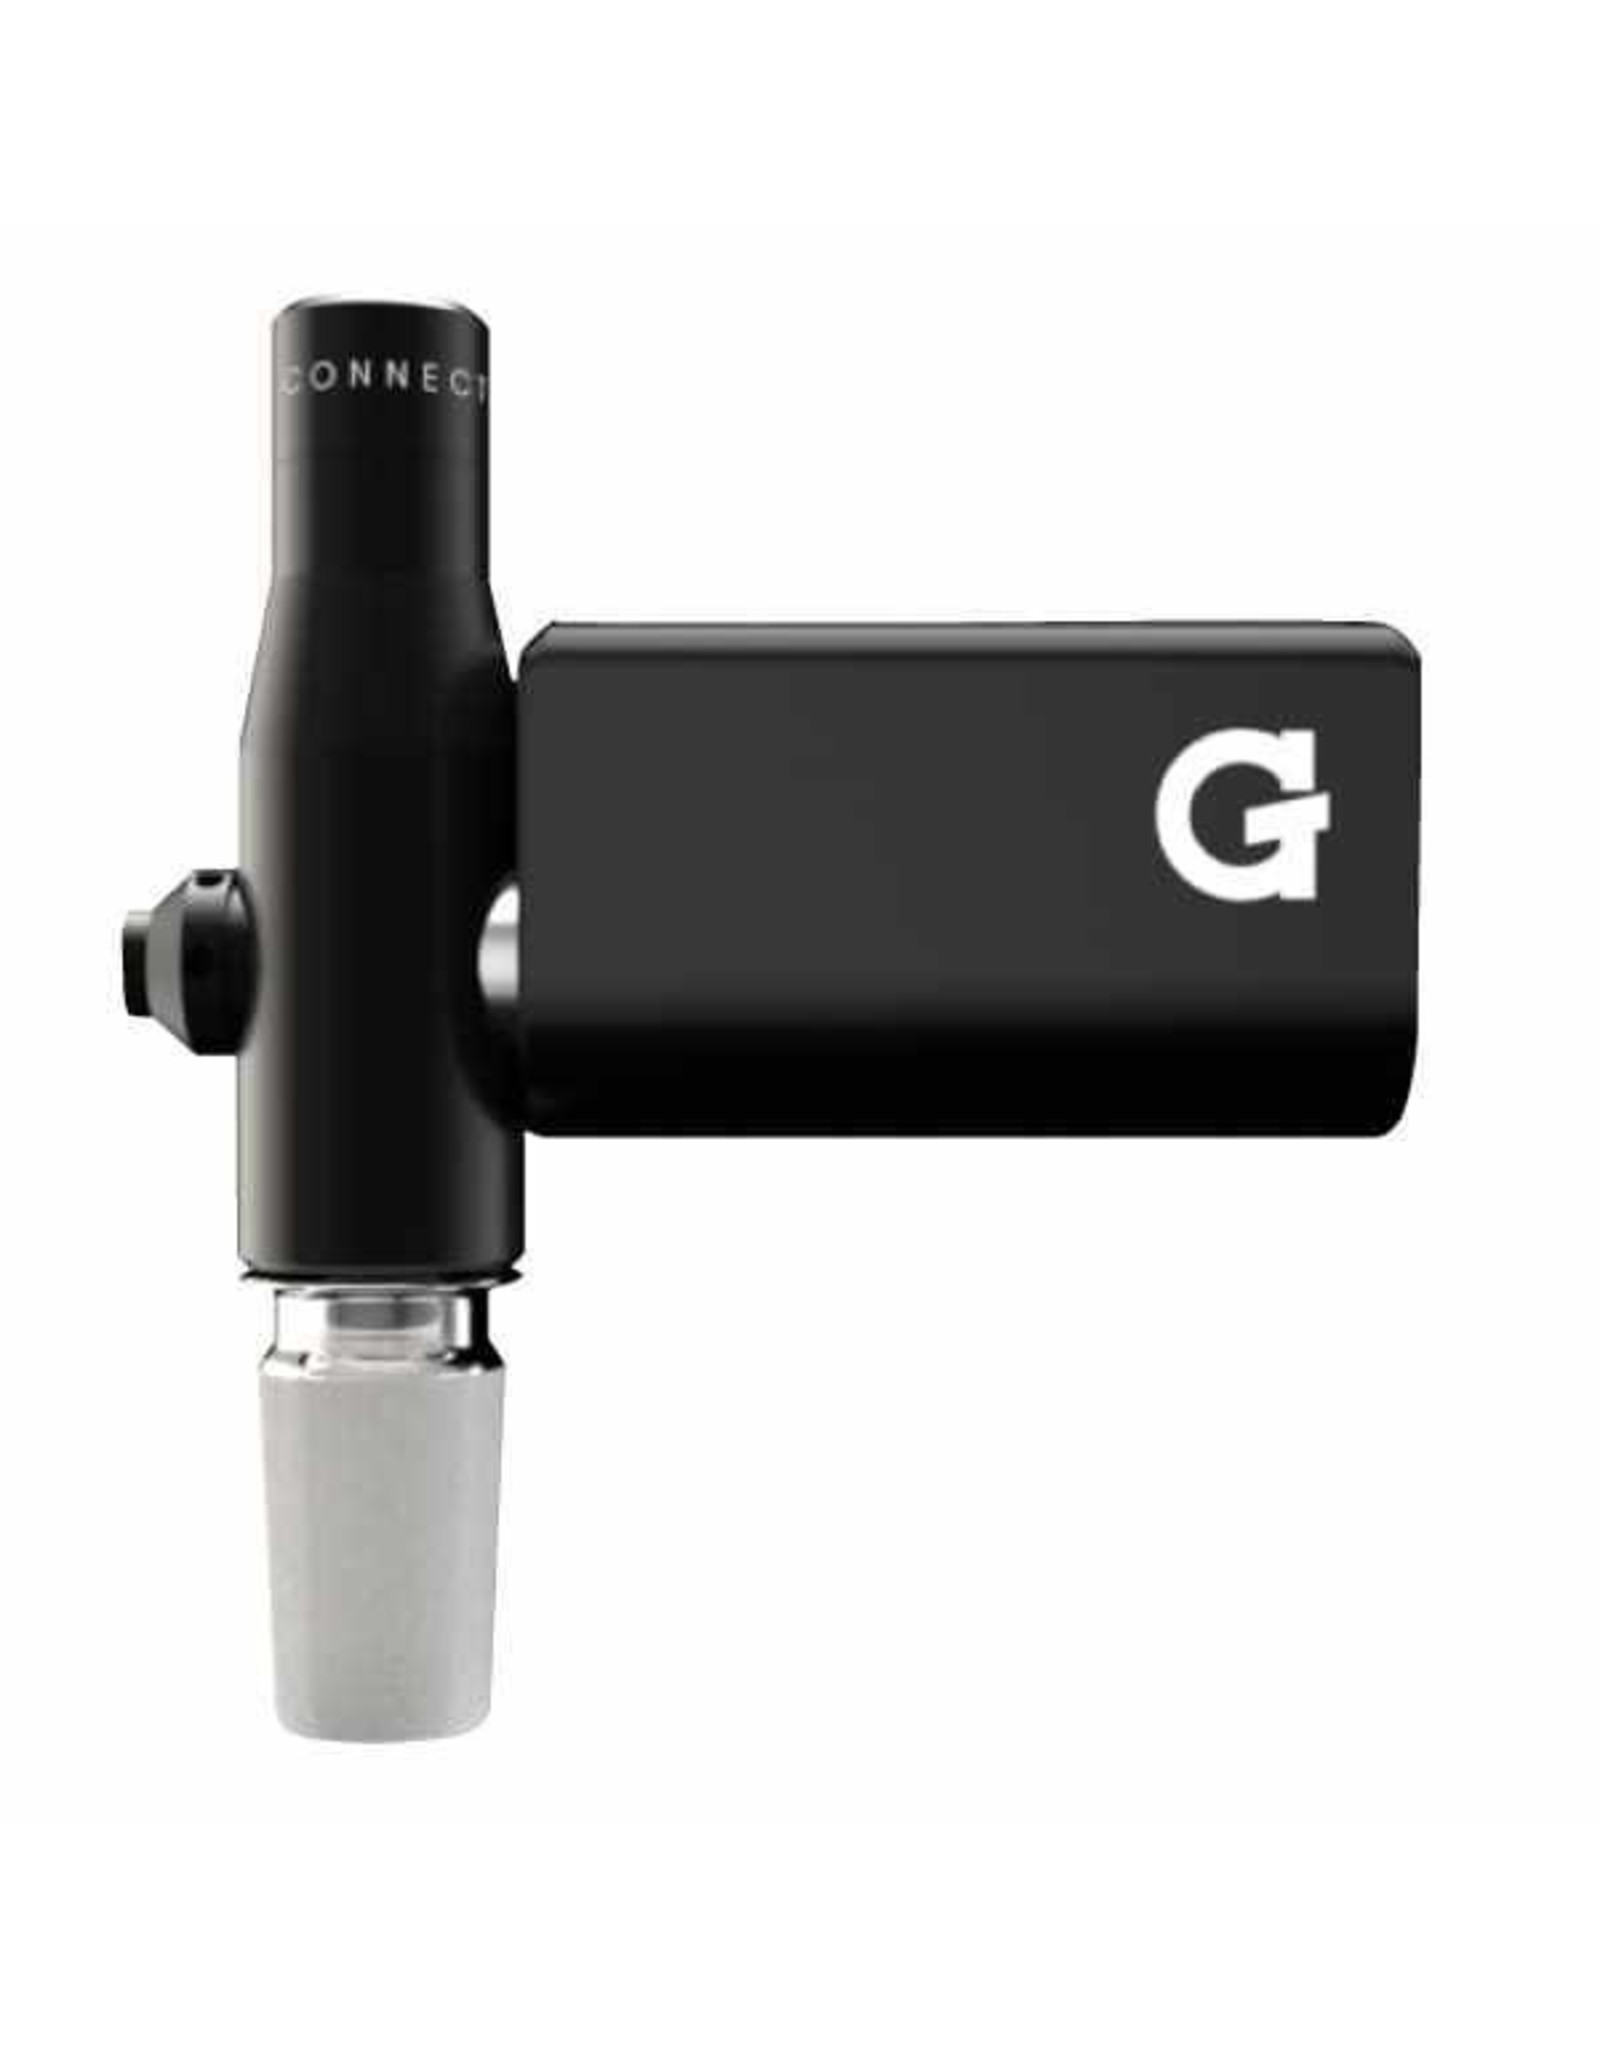 GPEN G Pen Connect Vaporizer